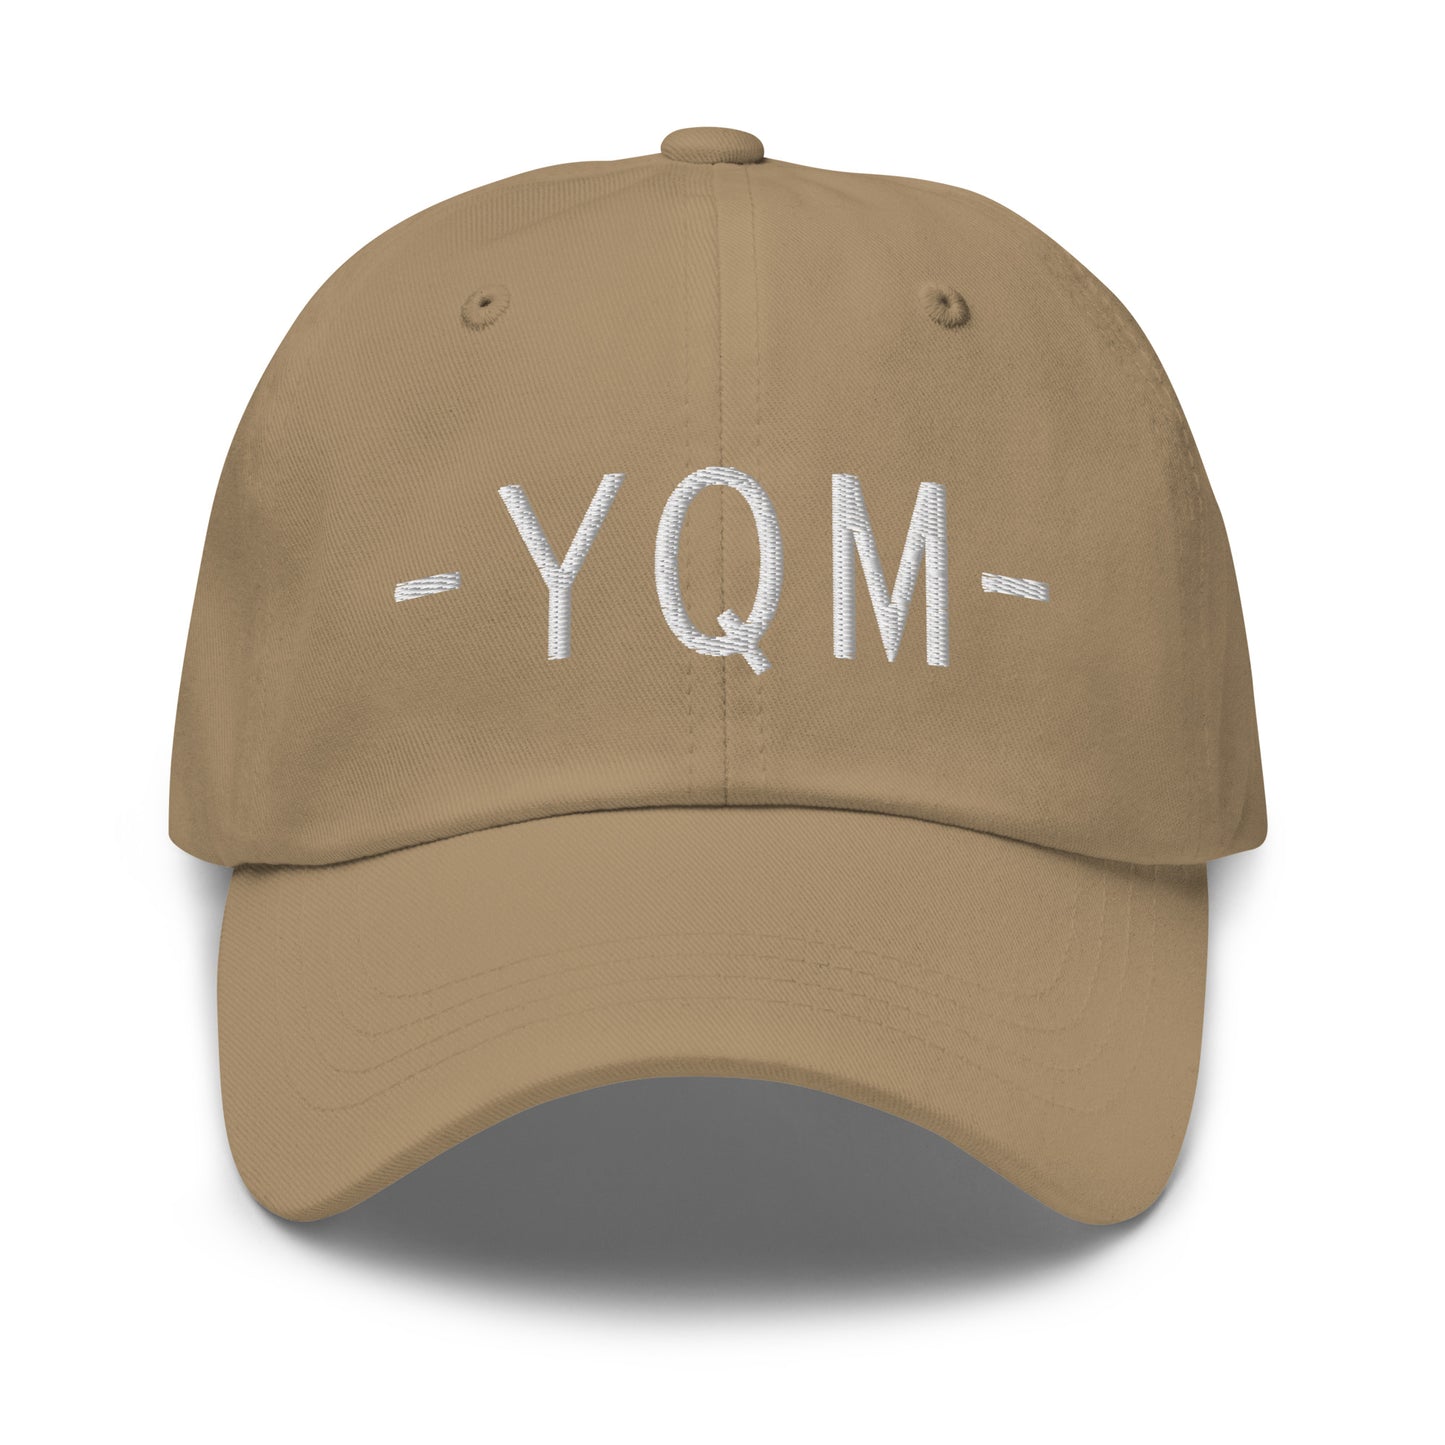 Souvenir Baseball Cap - White • YQM Moncton • YHM Designs - Image 21